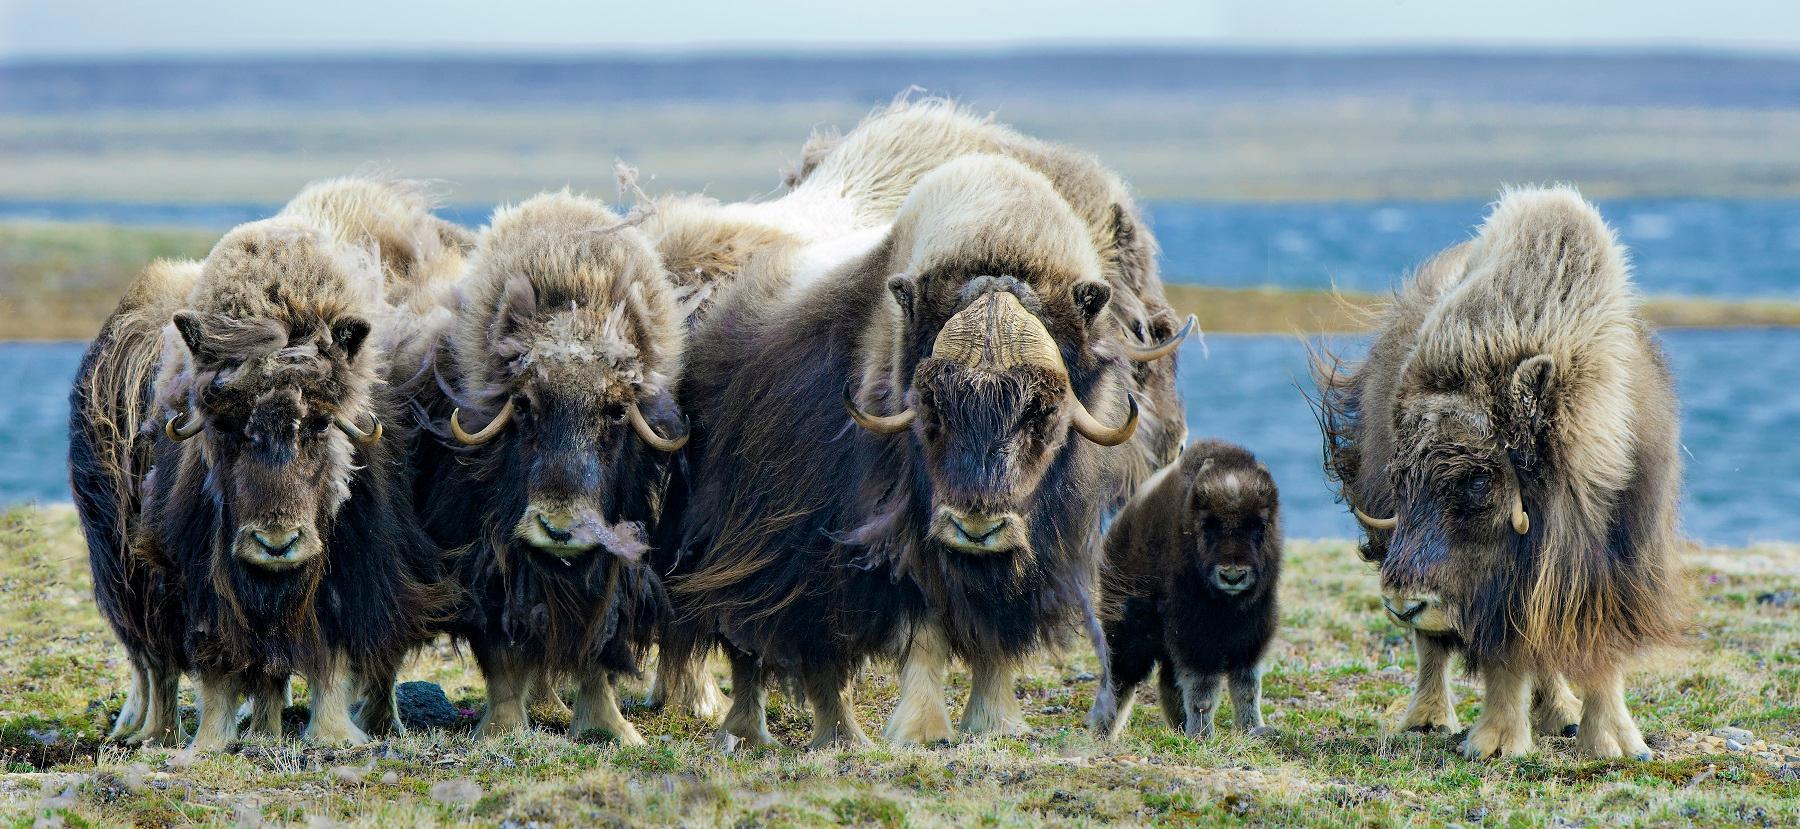 Muskoxen herd, Northwest Territories